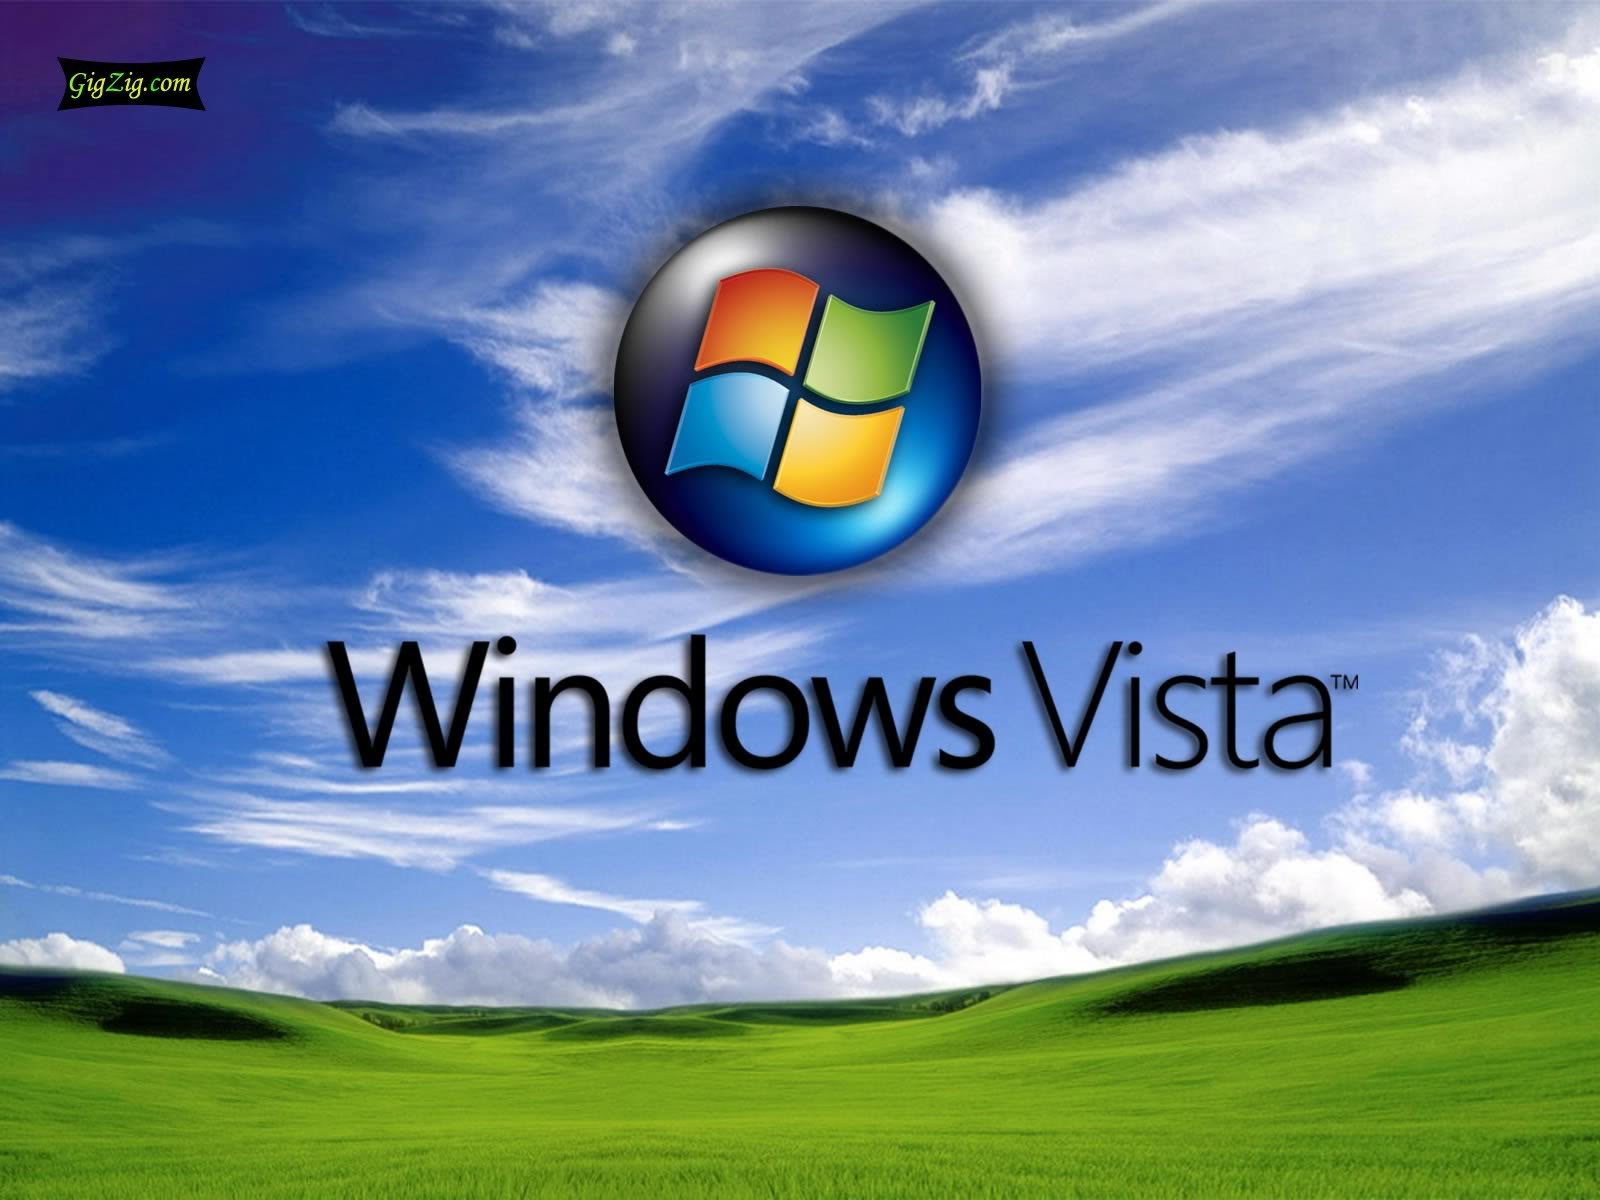 Windows story. Виндовс Виста. OC Windows Vista. Картинки Windows Vista. Виндовс хр Виста.